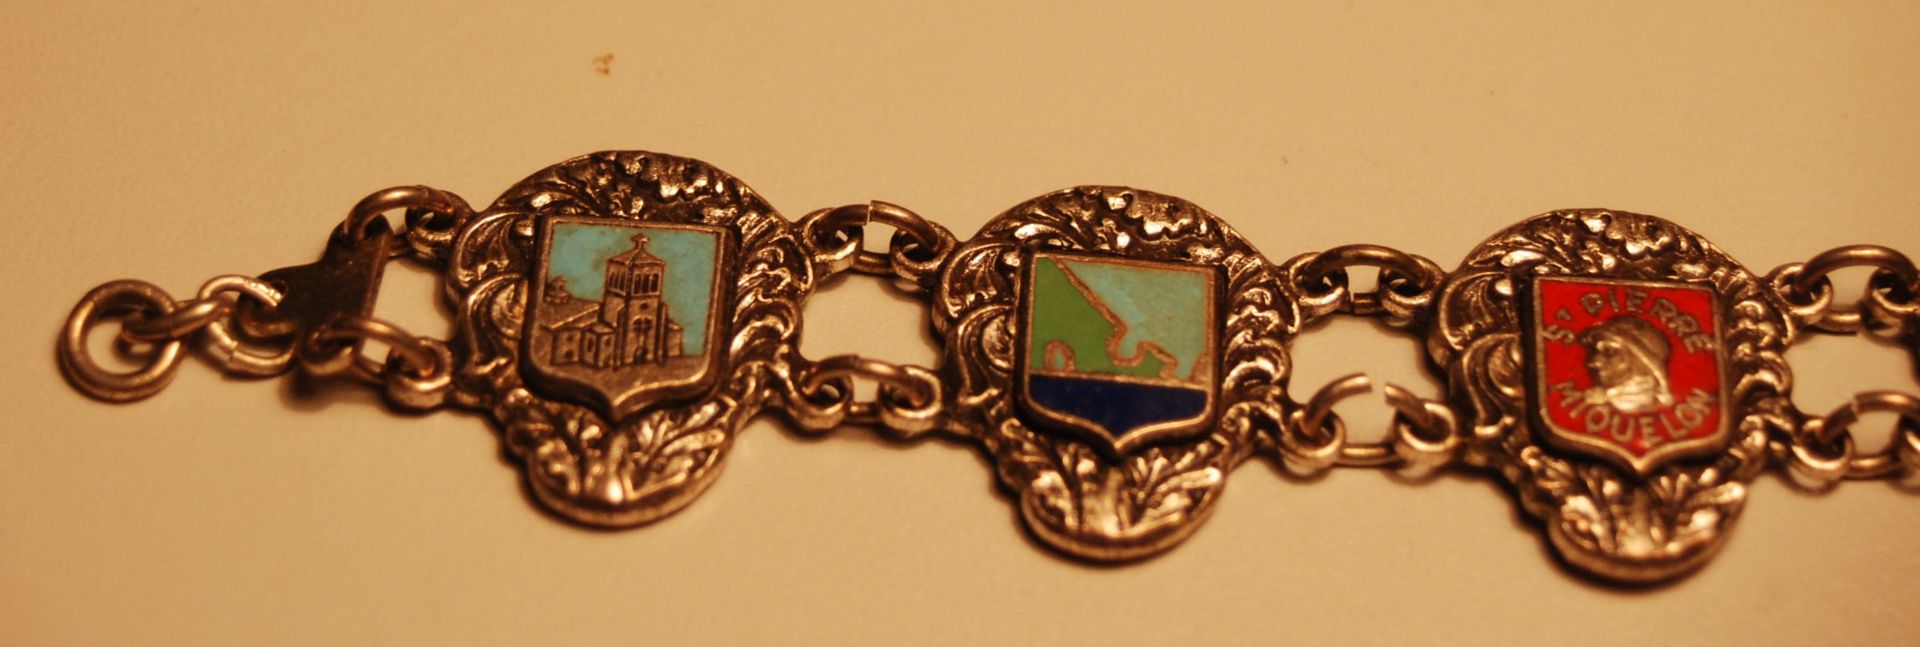 schweres Silber-Armband mit frz. Städtewappen "St.Pierre-Miquelon", L-19 cm, 24 gramm - Bild 4 aus 5